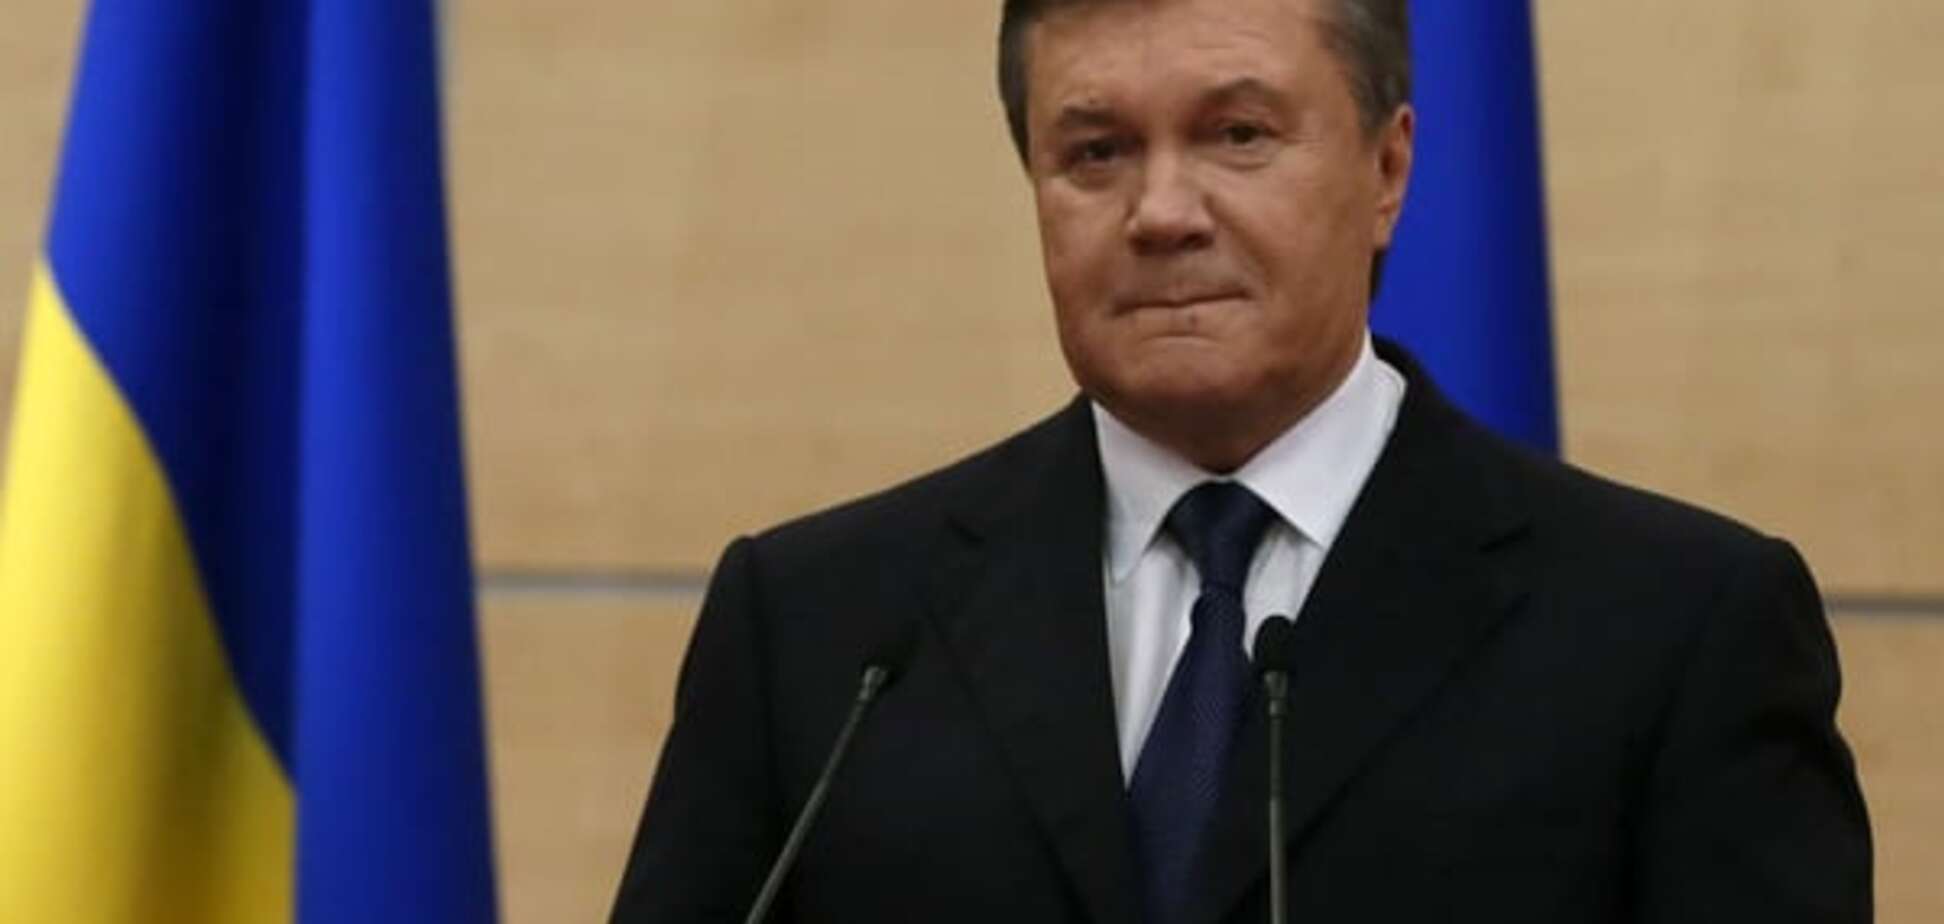 Віті тут немає: Росія продовжує переконувати, що Янукович не у них